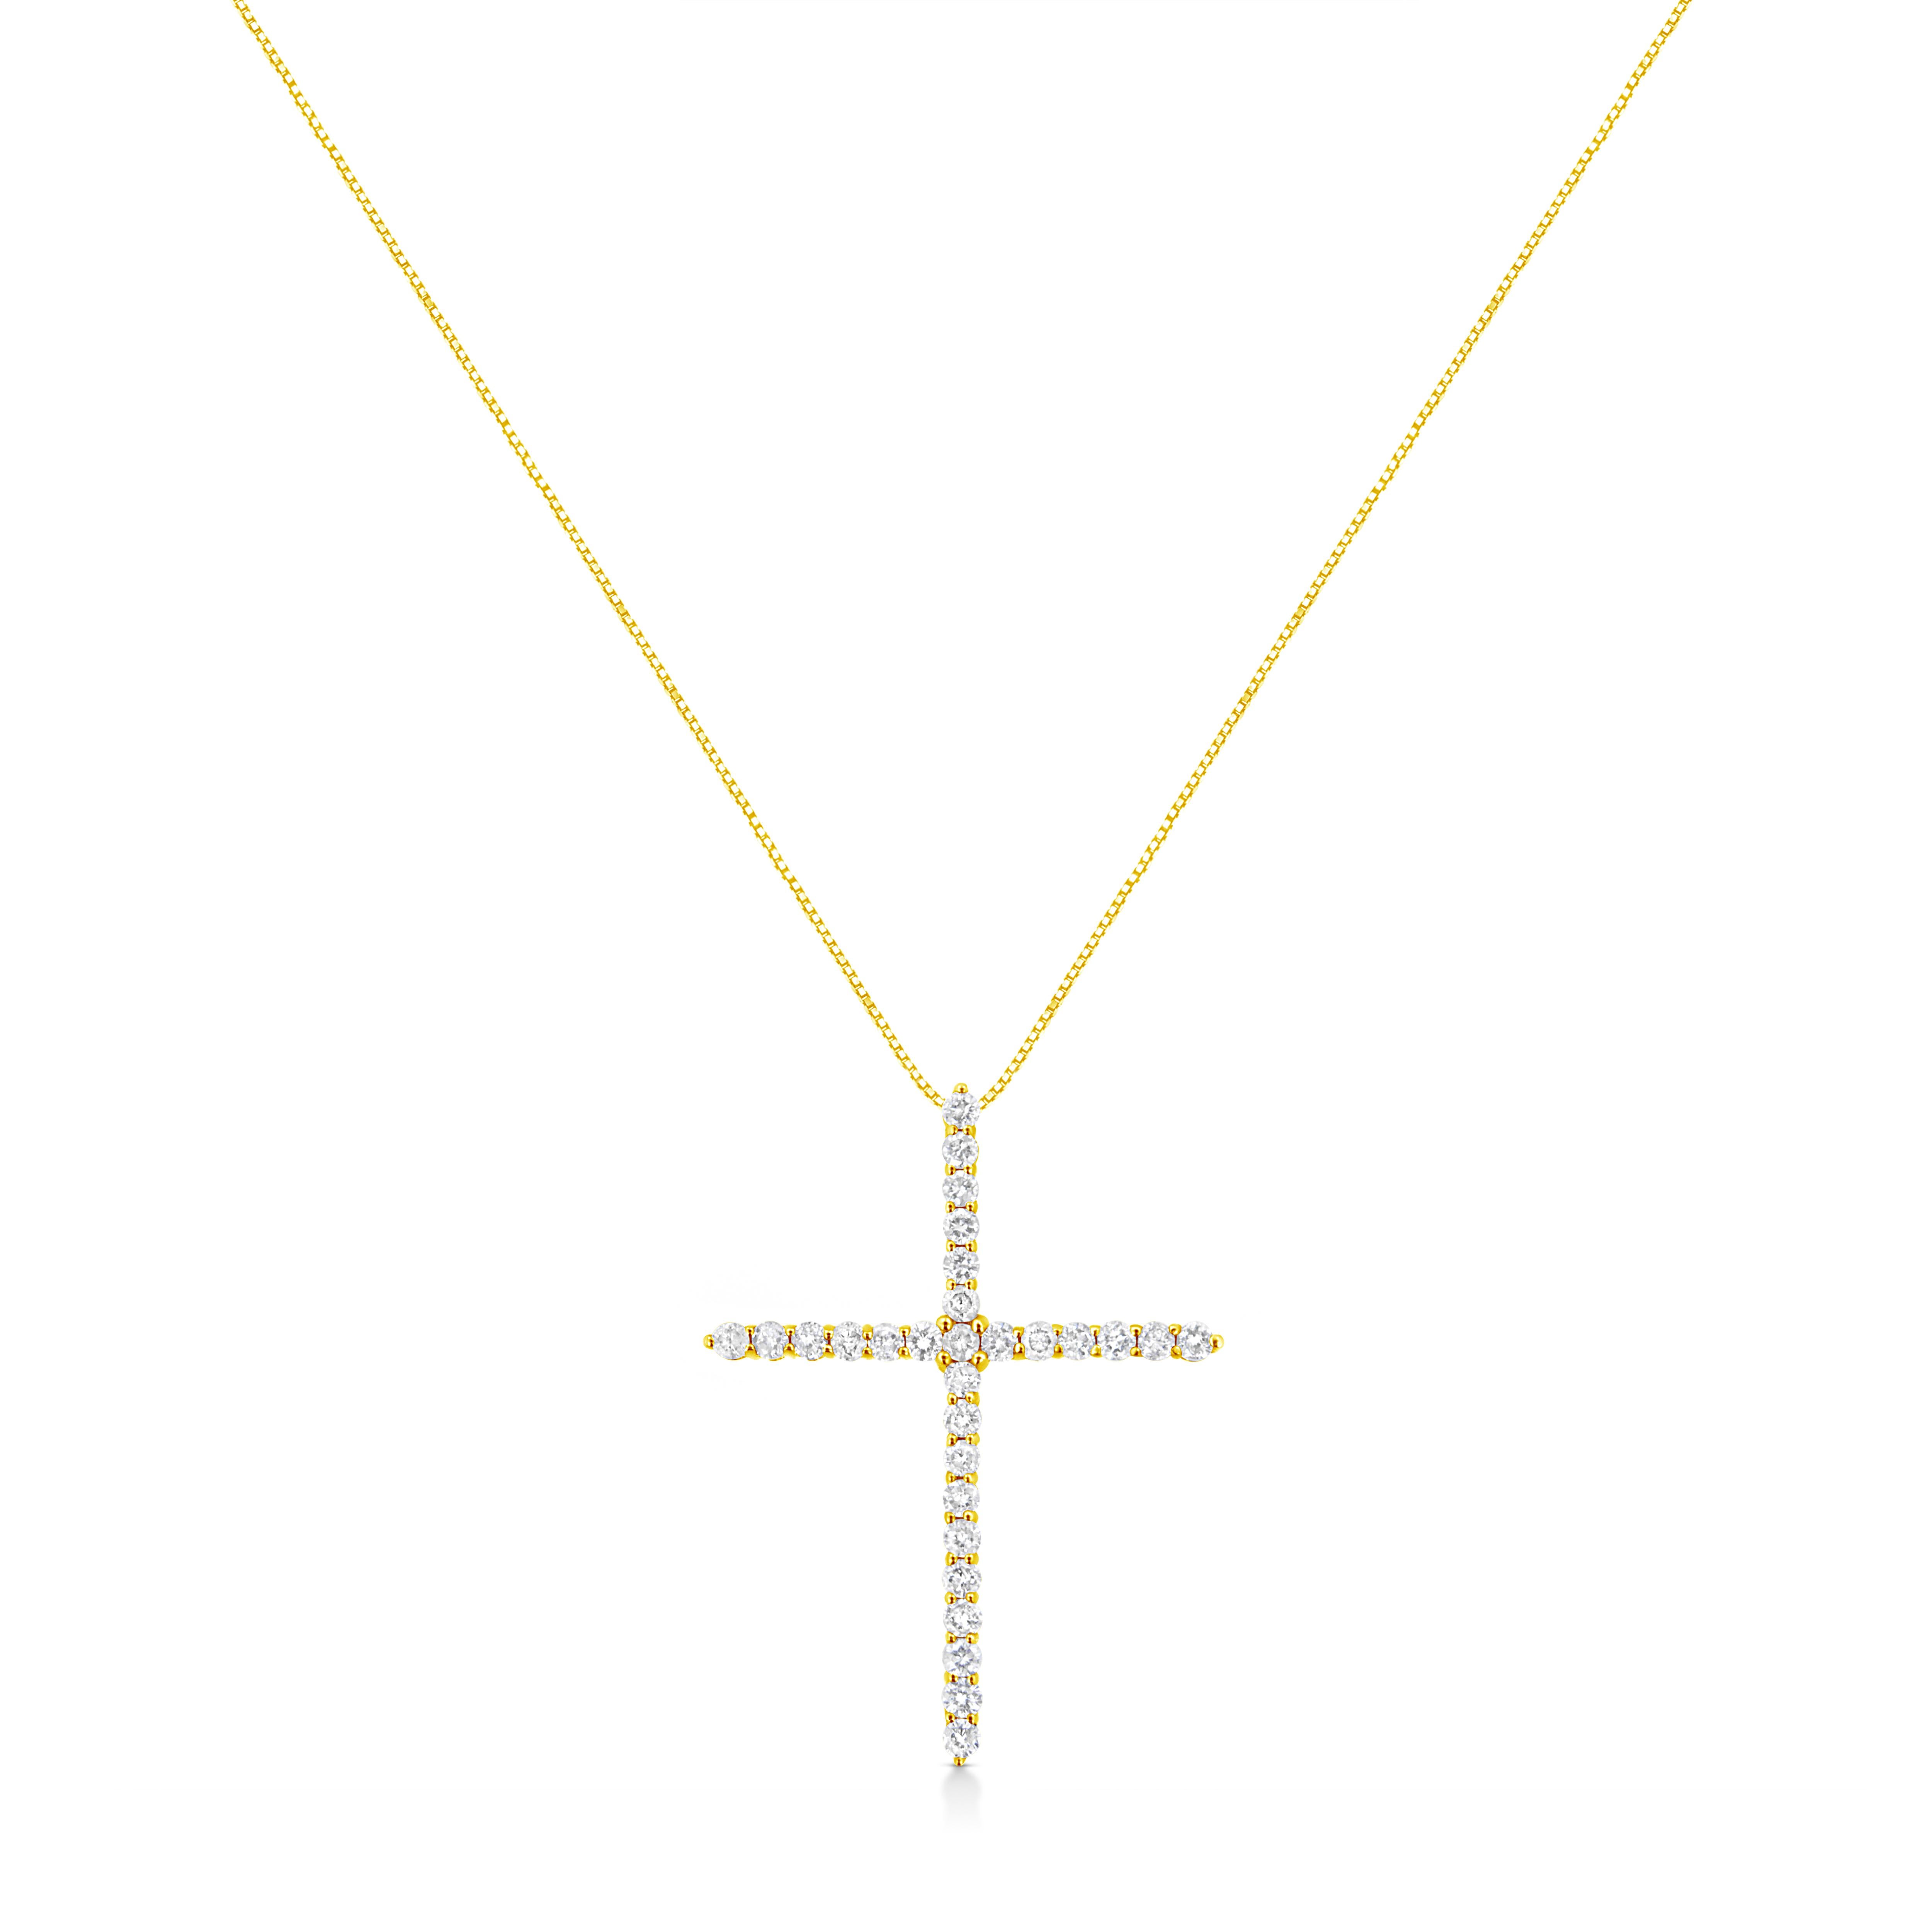 Dieser glamouröse Kreuzanhänger ist mit einem atemberaubenden Gesamtkaratgewicht von 3 cttw geschmückt. Wunderschöne und natürliche Diamanten im Rundschliff schimmern in dieser Halskette und sind in feinstes 10-karätiges Gelbgold gefasst, das an